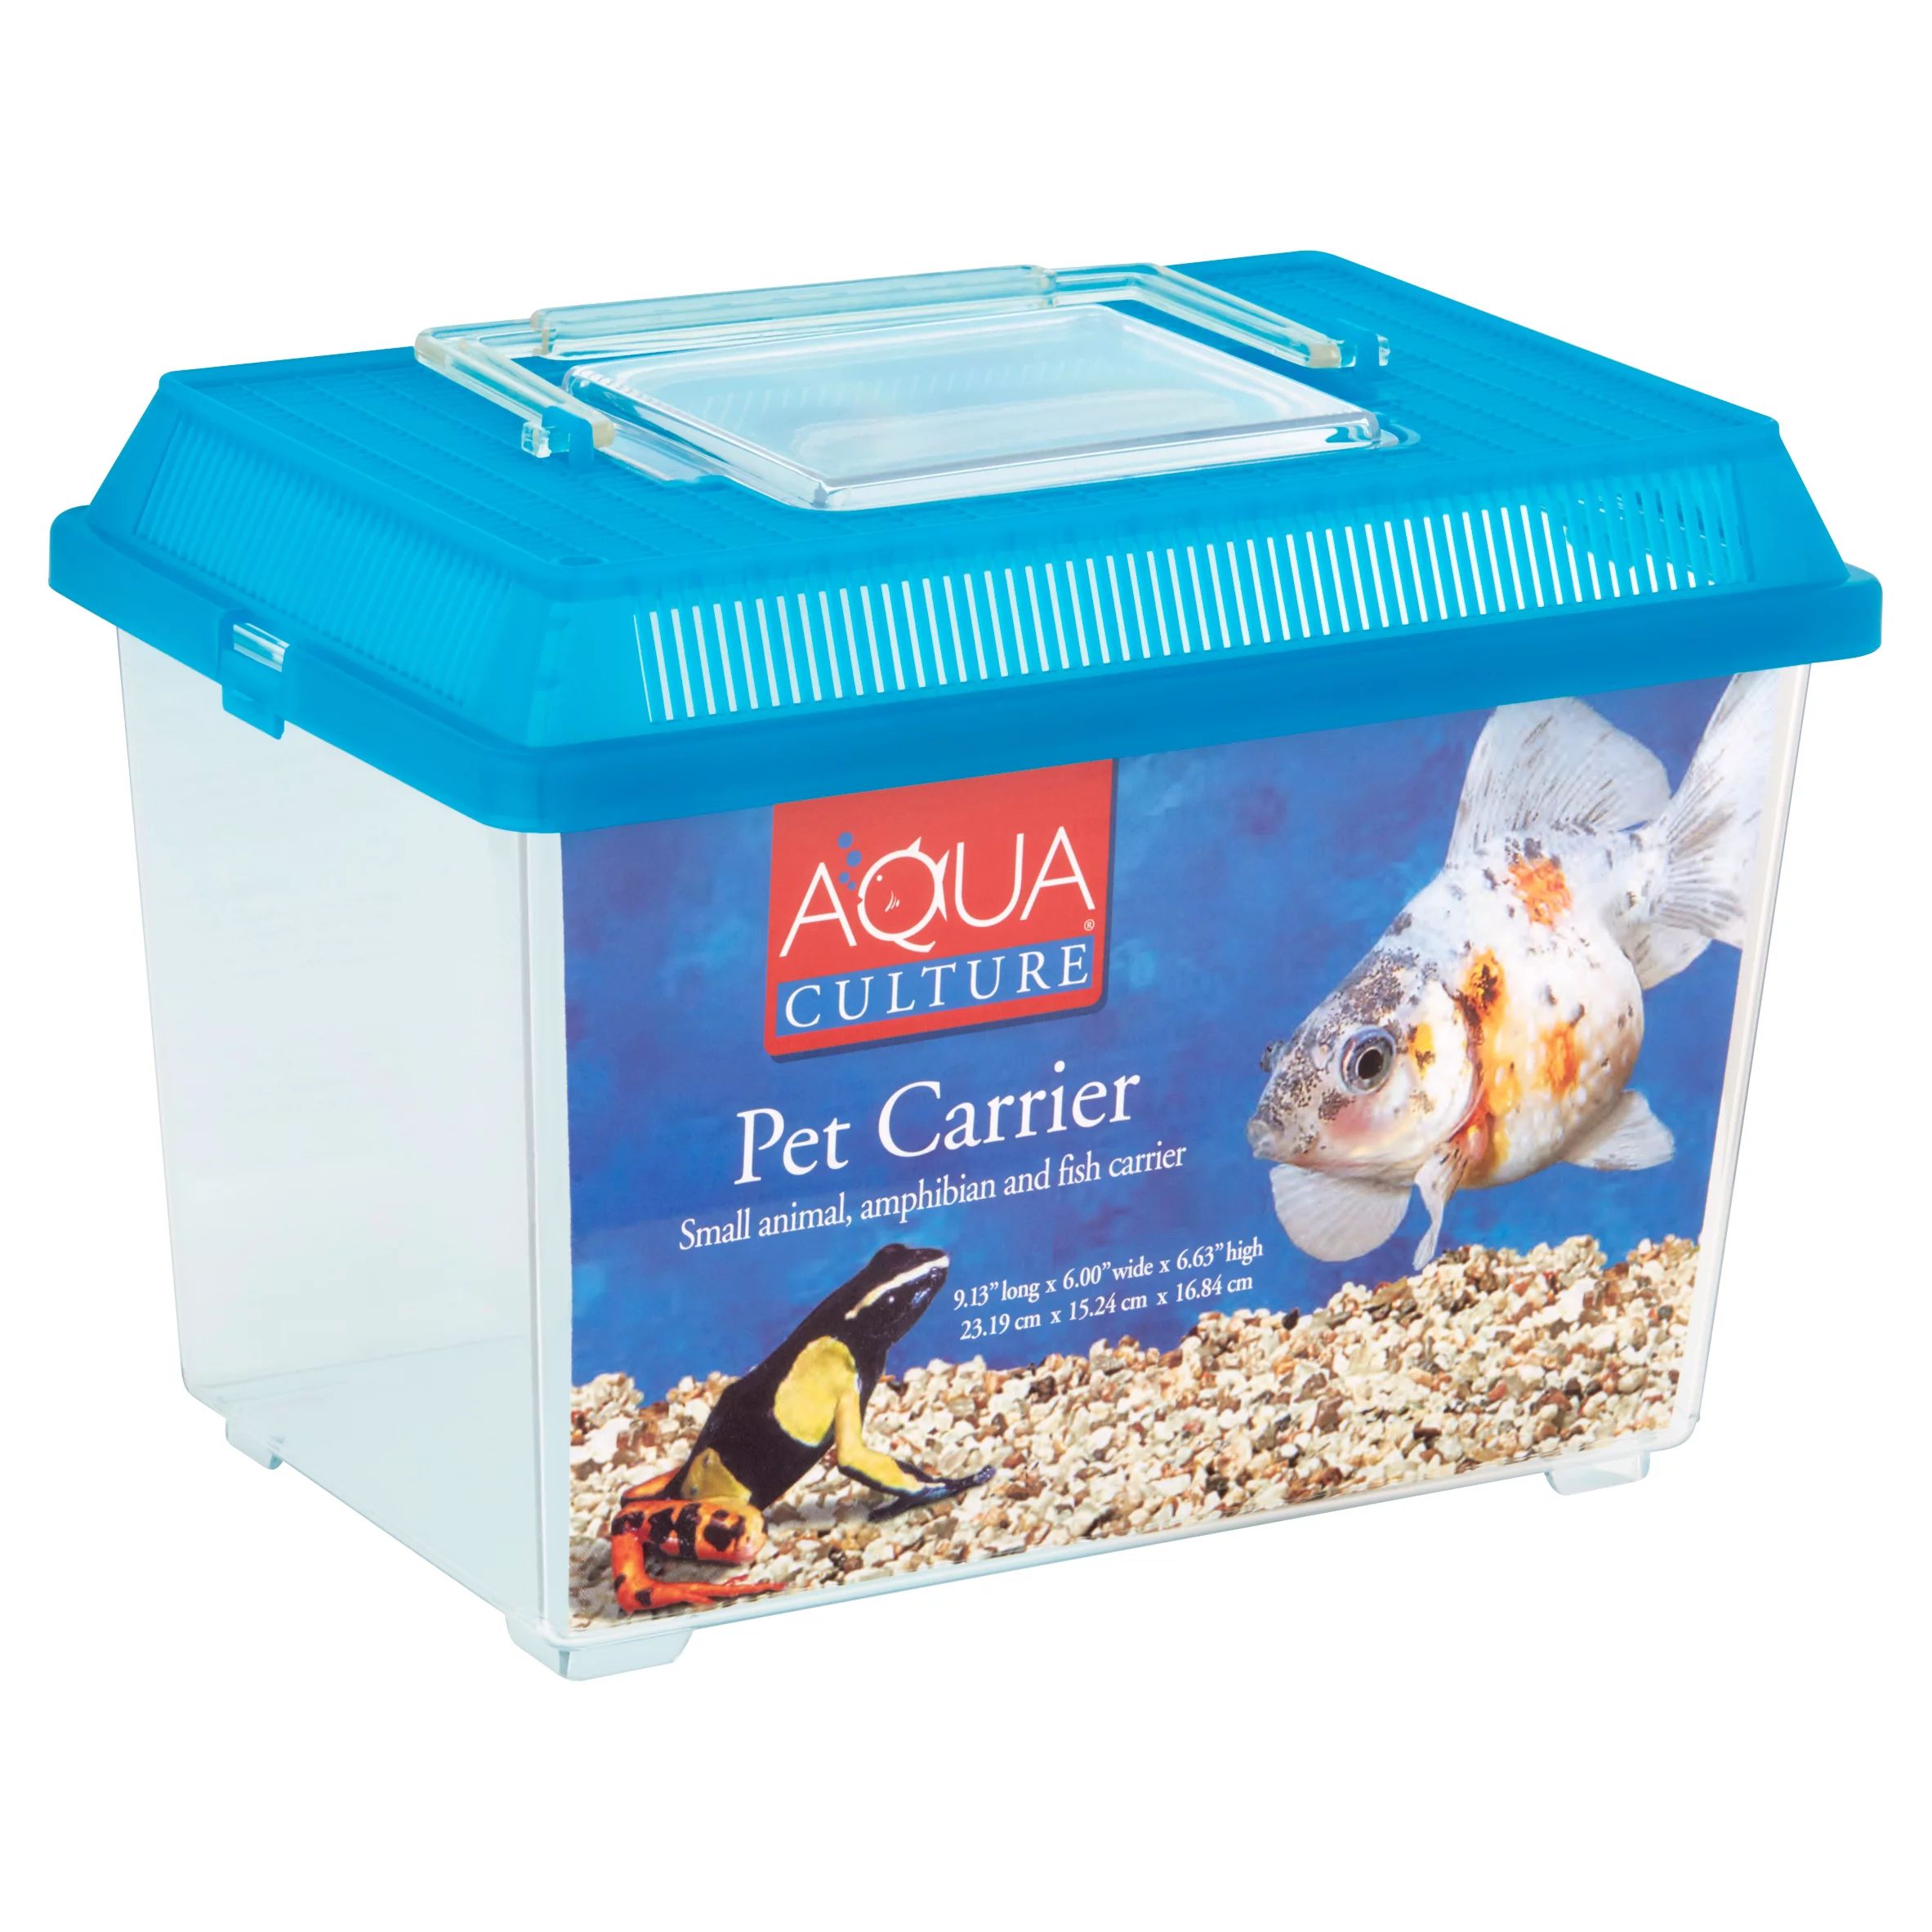 Aqua Culture Pet Carrier for Small Animals, Amphibians & Fish | Walmart (US)